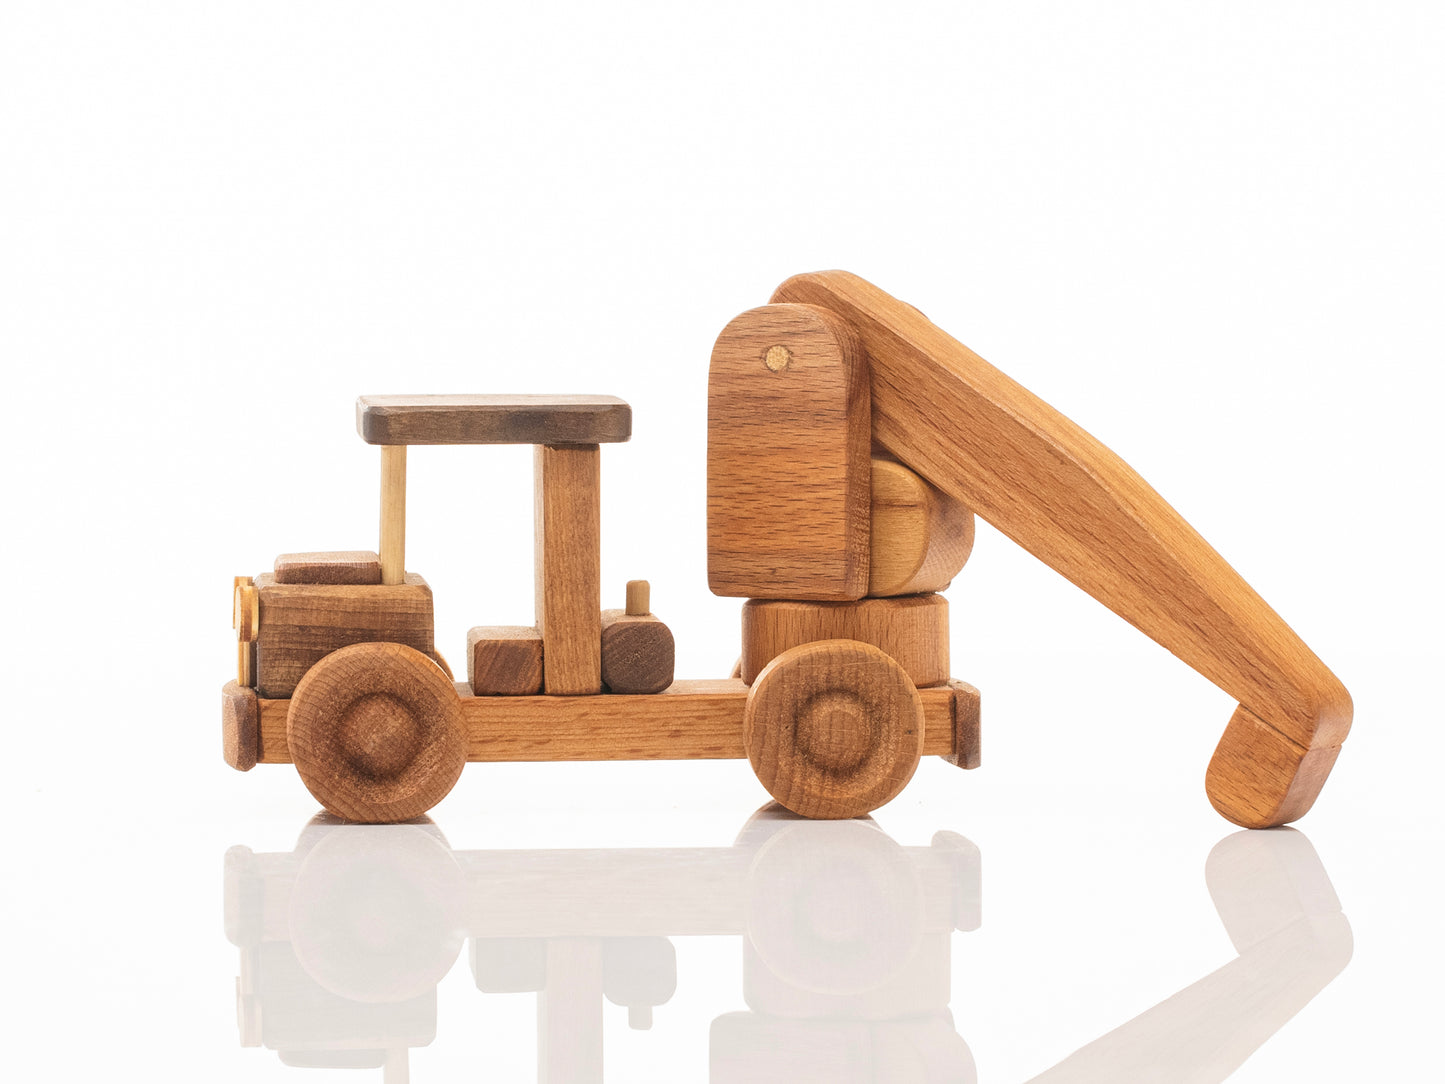 Wooden Crane Toy